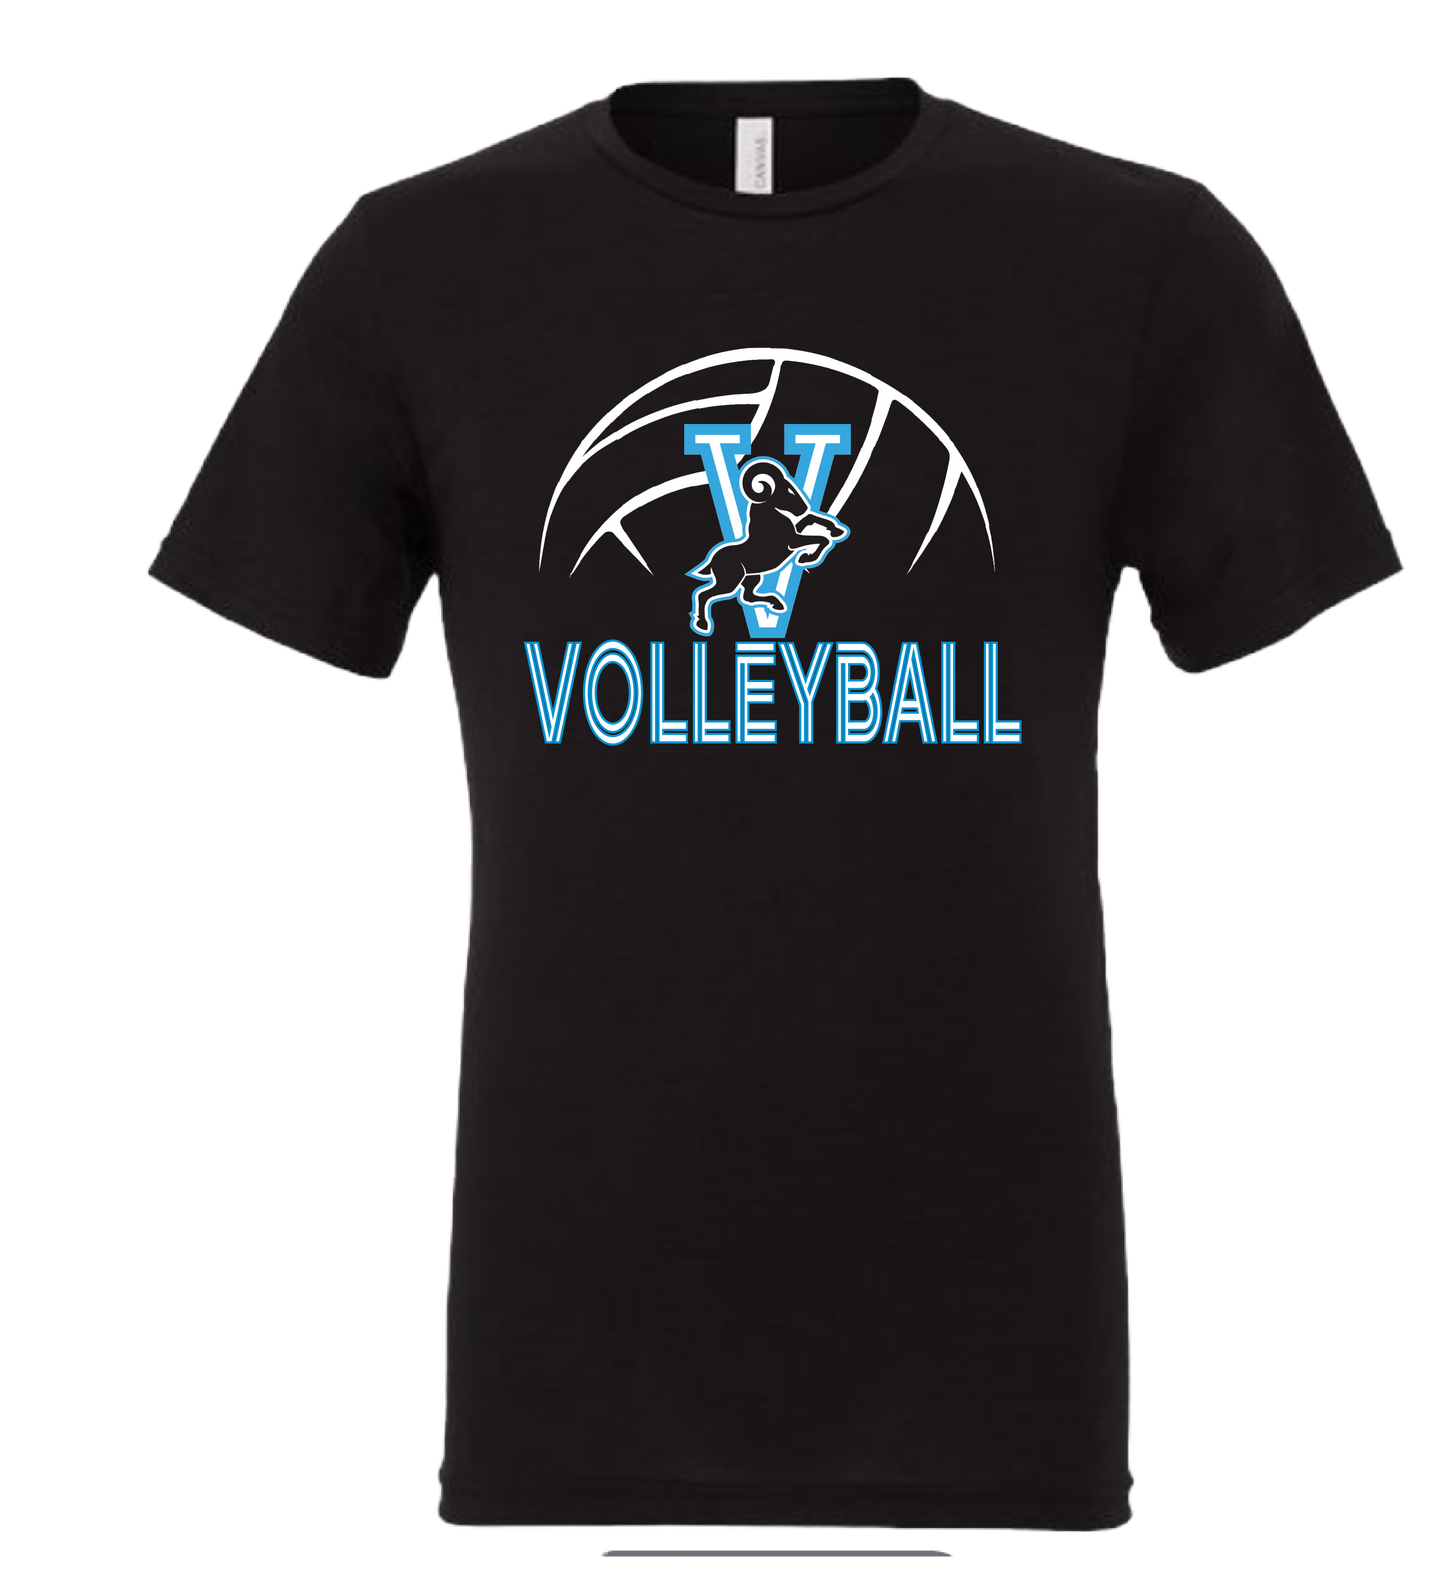 VFS Volleyball t-shirt